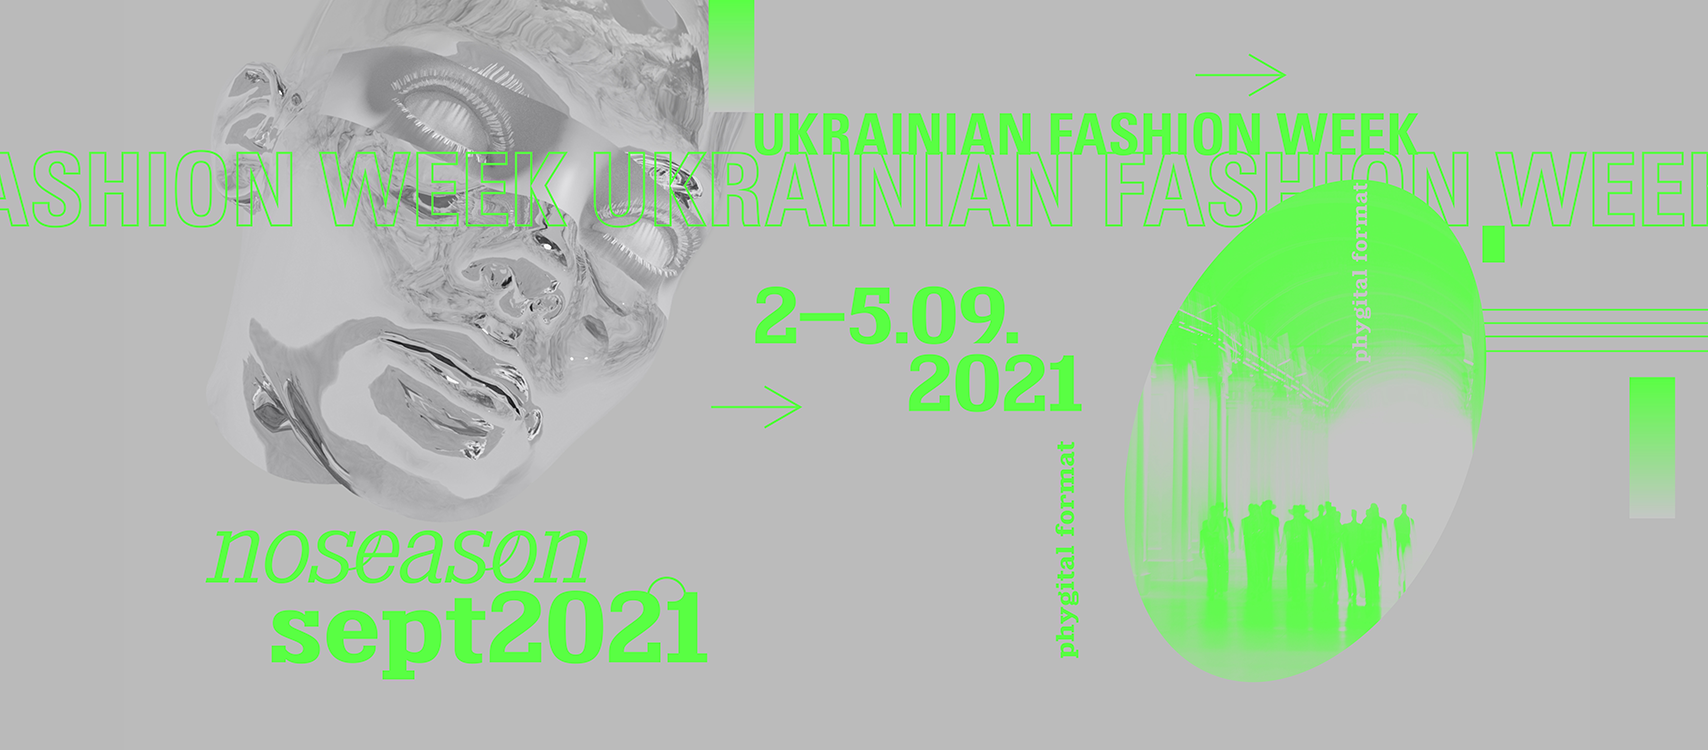 Відкрито акредитацію на Ukrainian Fashion Week noseason sept 2021